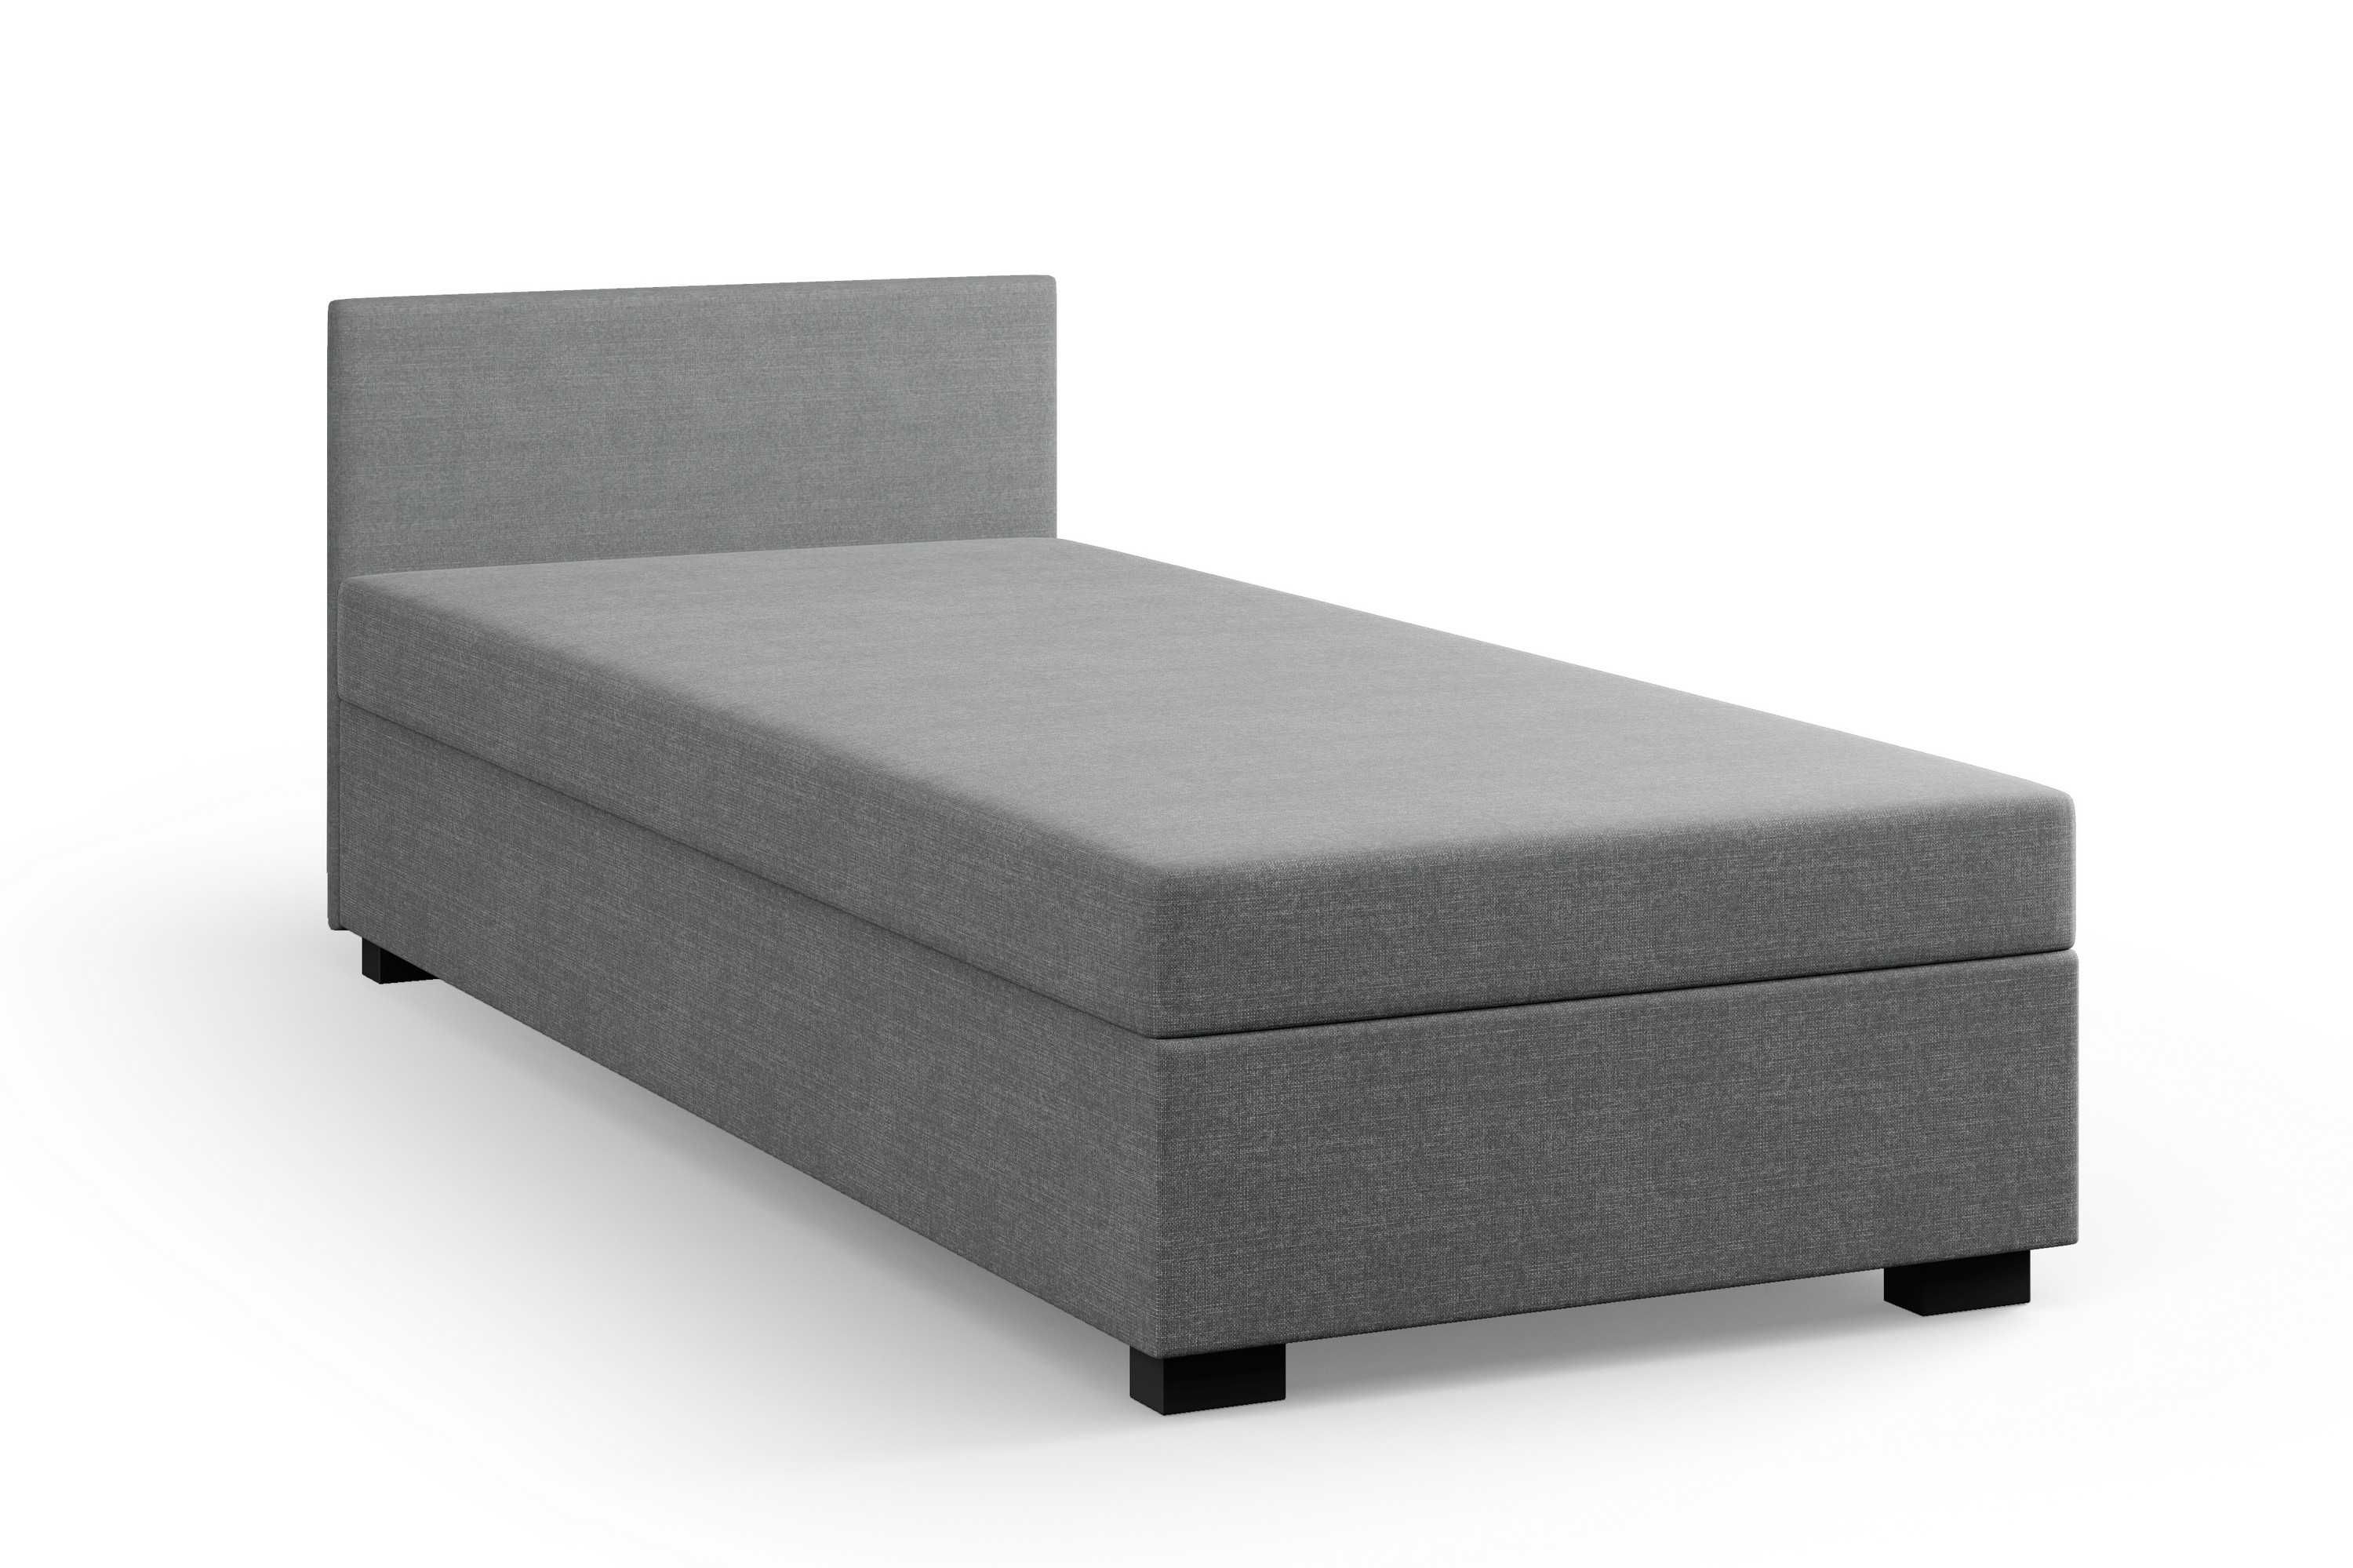 Solidne EKO łóżko pojedyncze tapczan wersalka sofa kwatera hotel